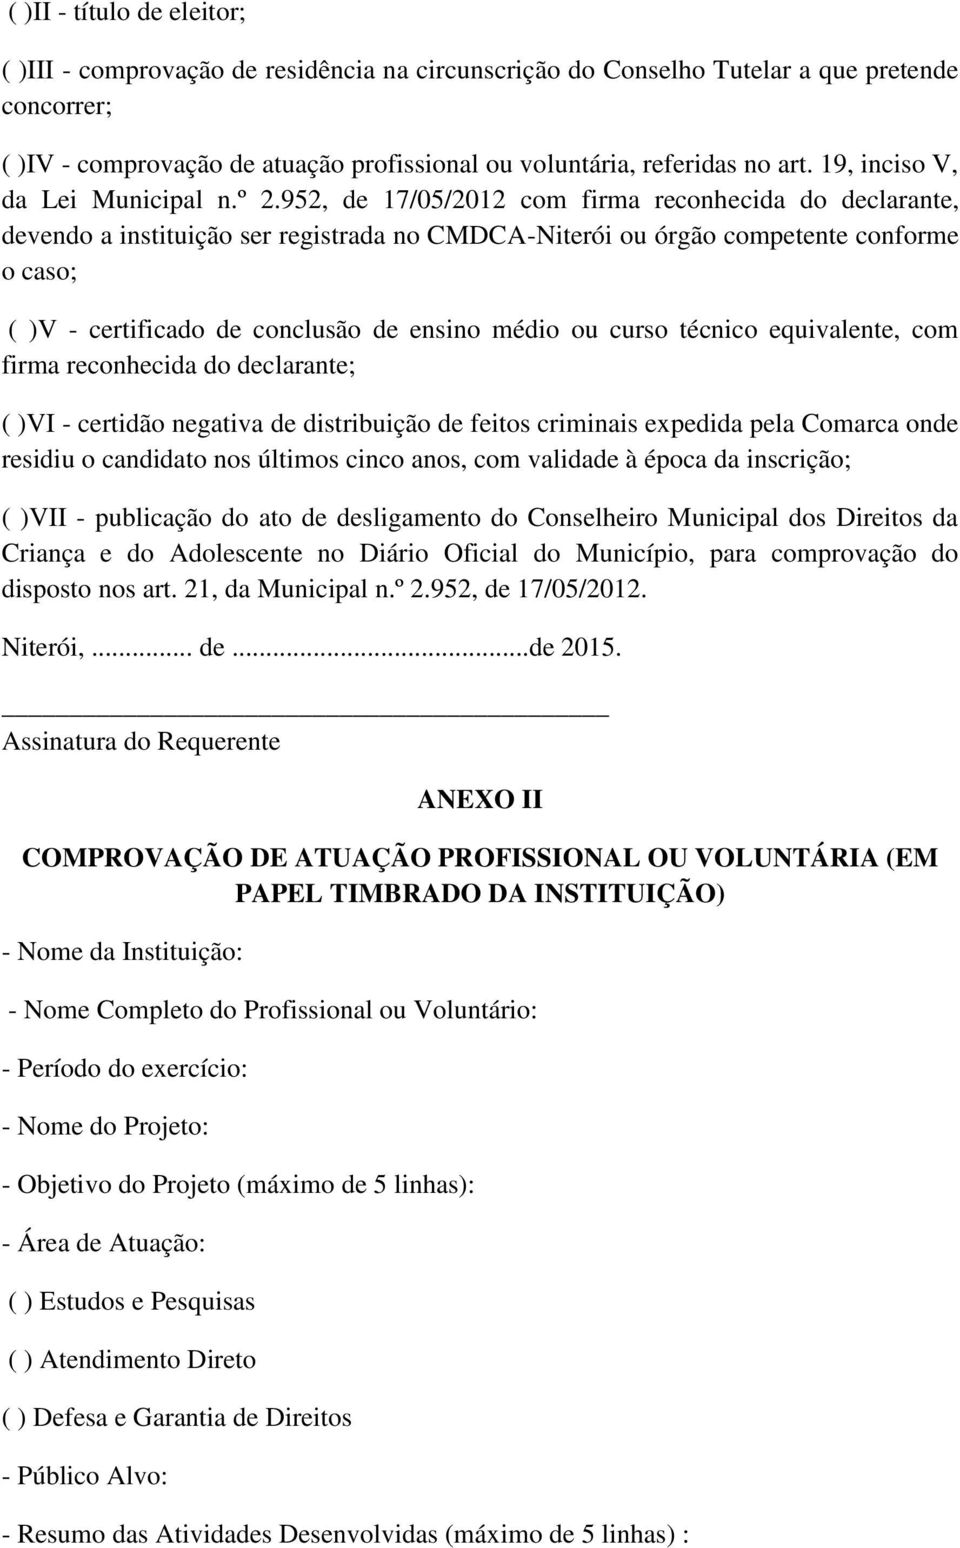 952, de 17/05/2012 com firma reconhecida do declarante, devendo a instituição ser registrada no CMDCA-Niterói ou órgão competente conforme o caso; ( )V - certificado de conclusão de ensino médio ou